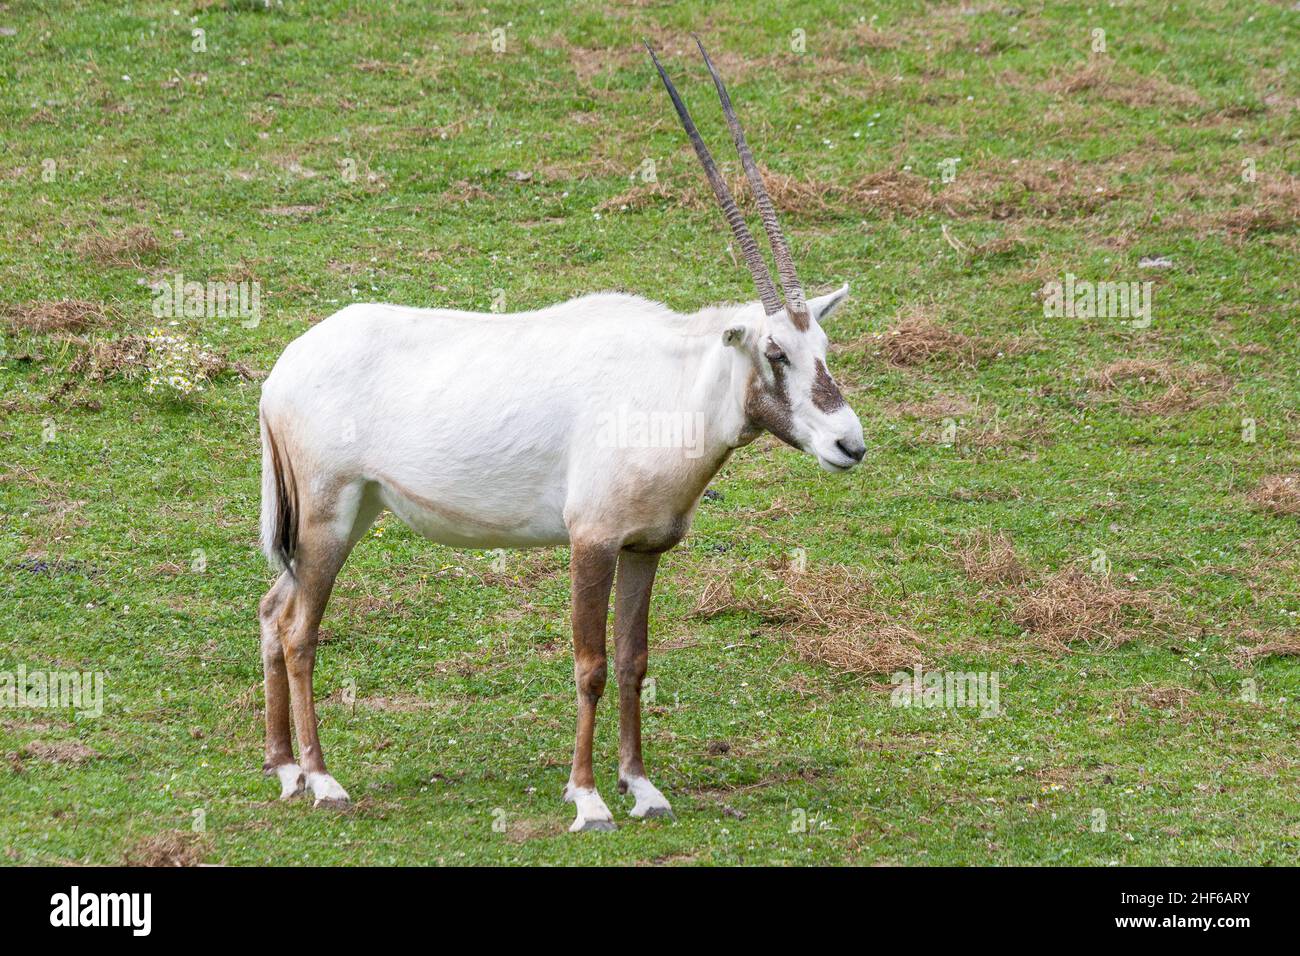 The Arabian white oryx, medium-sized antelope. Latin name Oryx leucoryx. Stock Photo